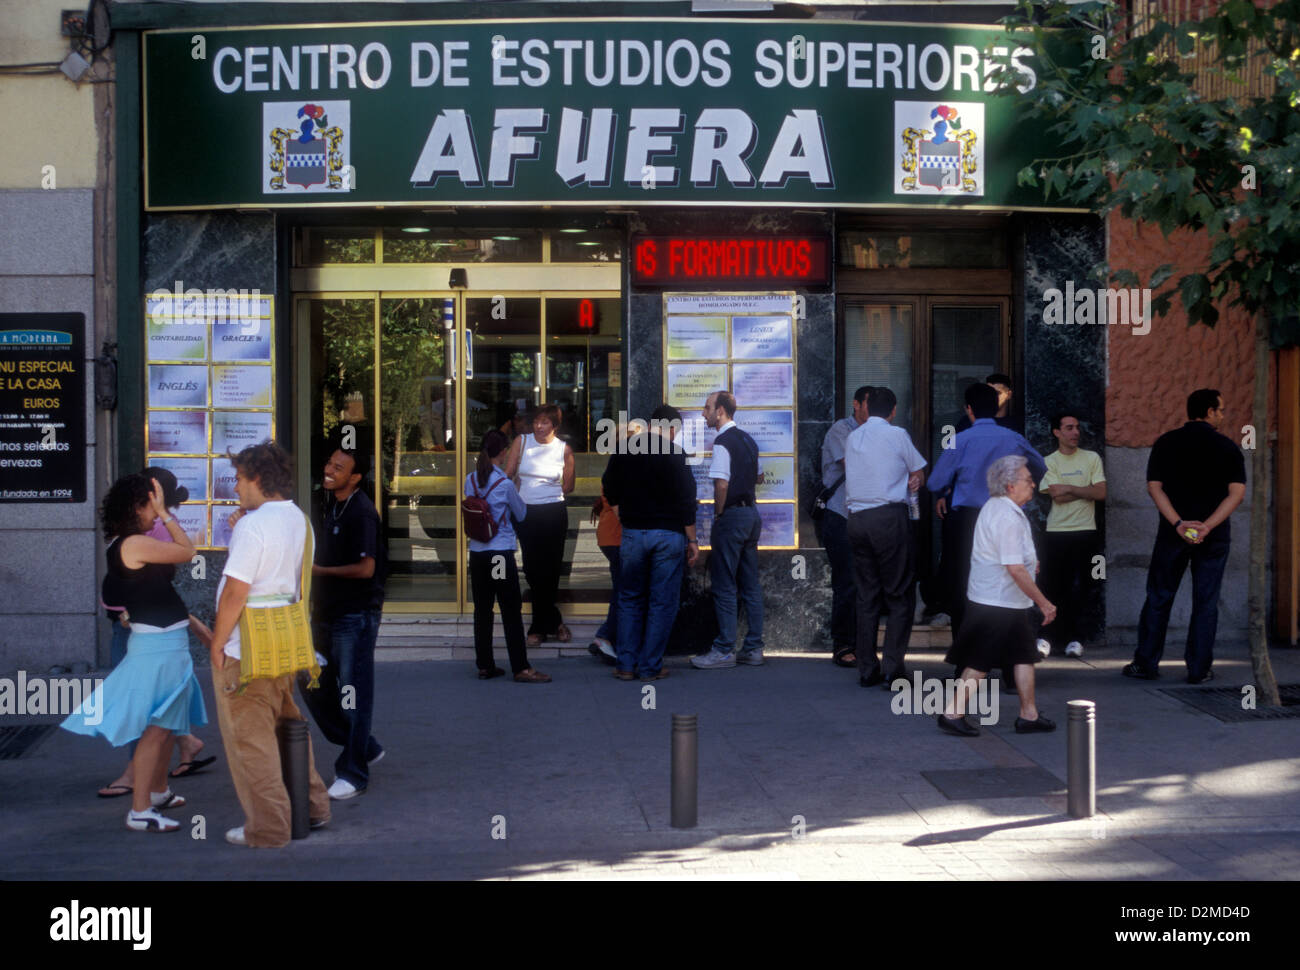 Gli spagnoli, popolo spagnolo, Centro de Estudios Superiores, AFUERA, Plaza de Santa Ana, Madrid, Provincia di Madrid, Spagna, Europa Foto Stock